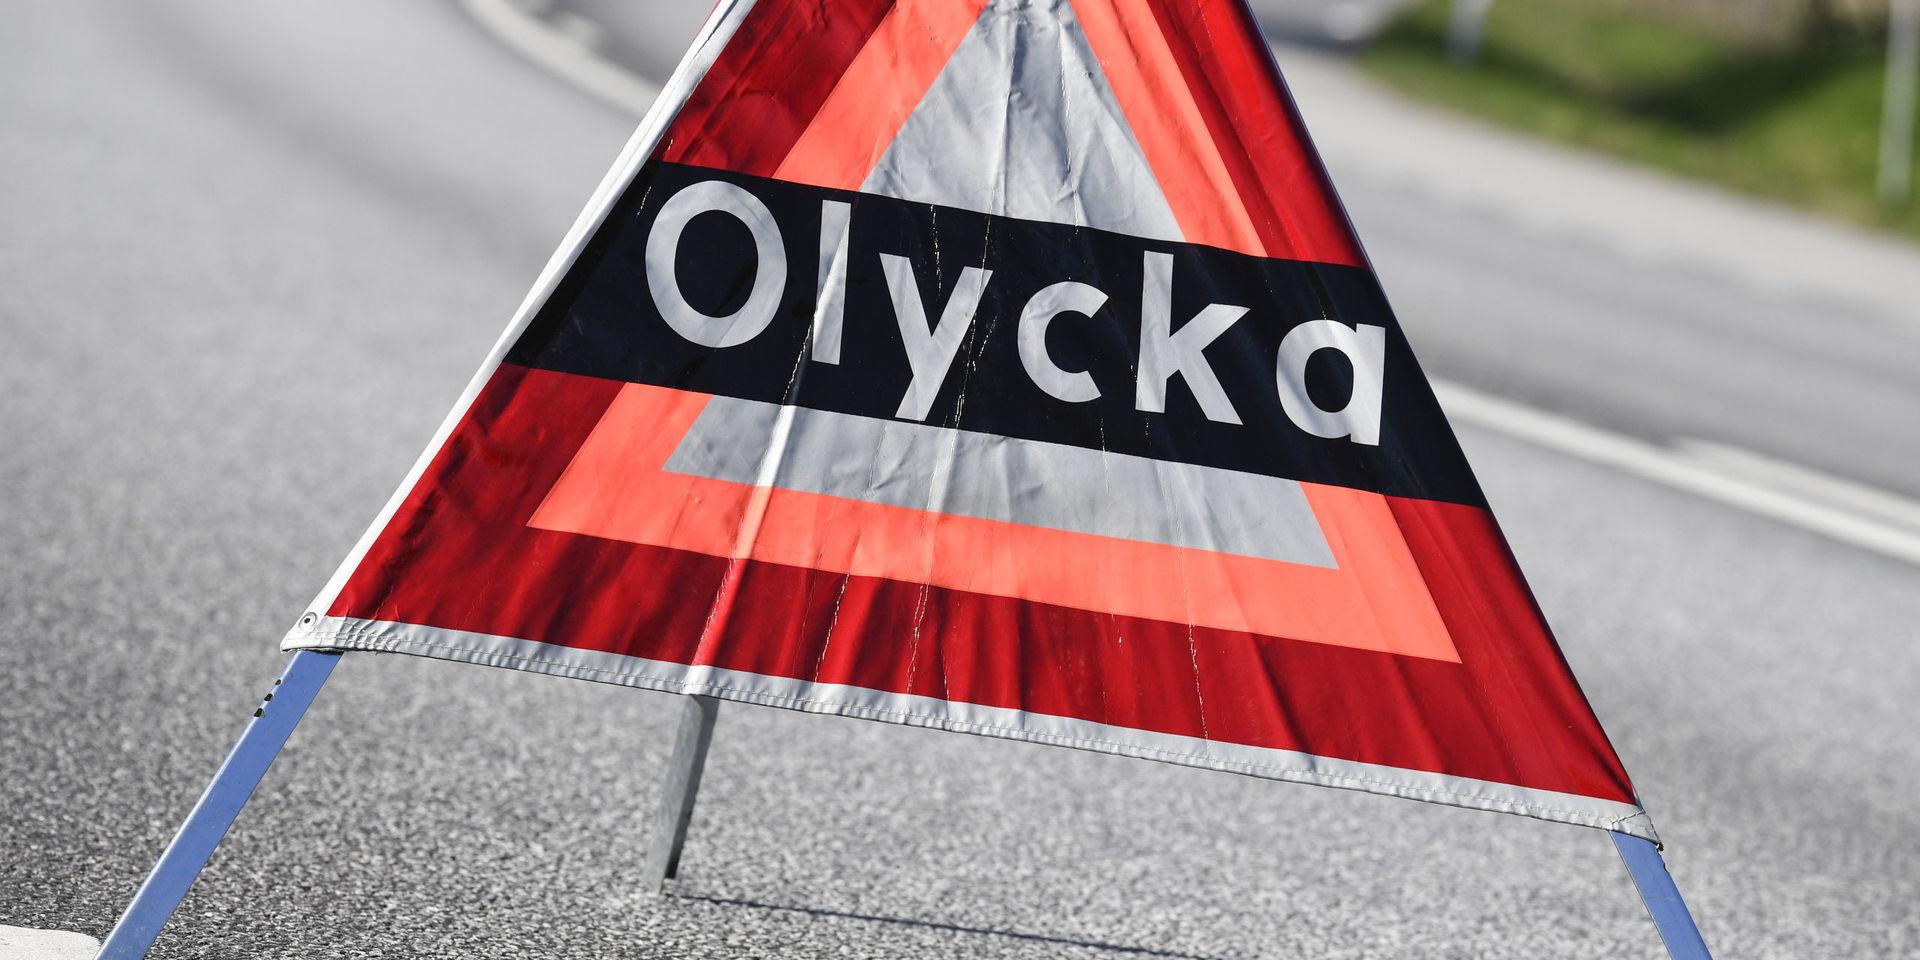 LANDSKRONA 2017-04-28 
Polisen har satt ut en varningstriangel med texten olycka i samband med en krock på en 80-väg söder om Landskrona. 
Foto: Johan Nilsson / TT / Kod 50090 